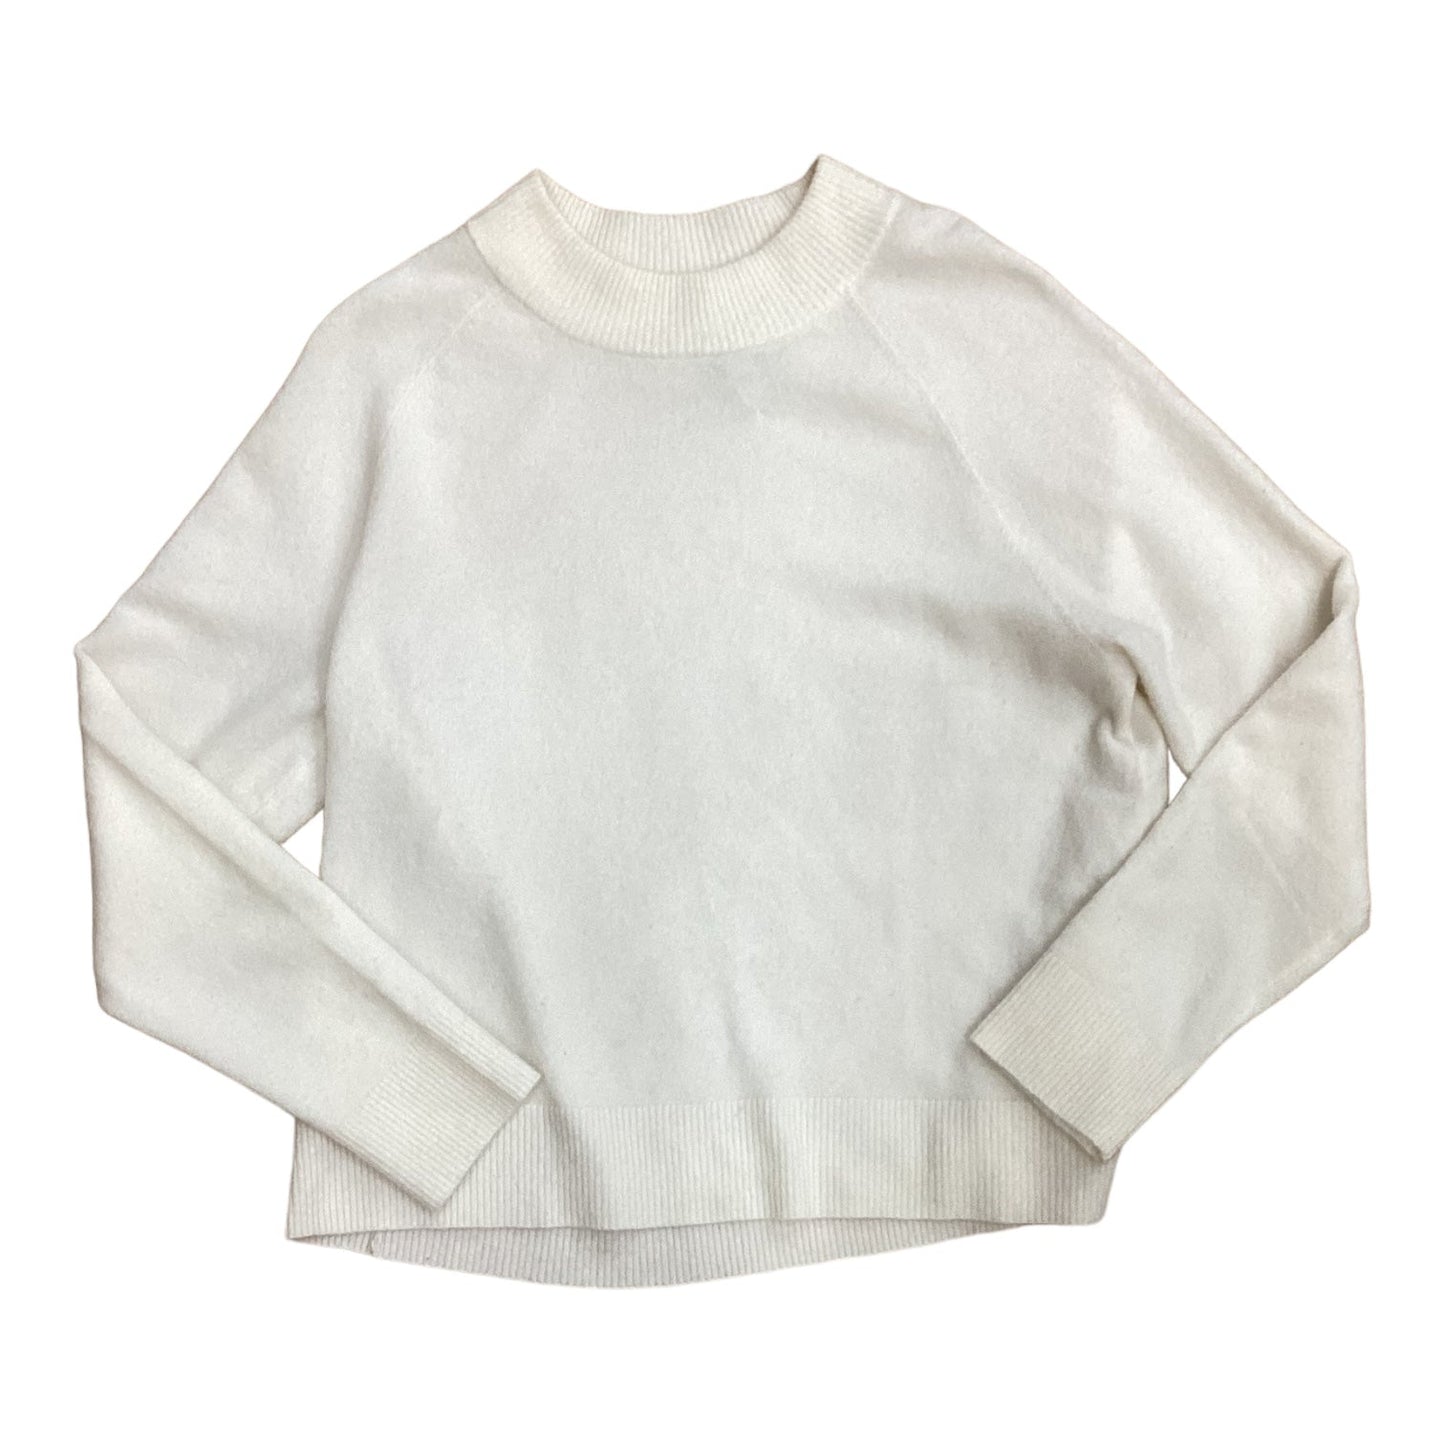 Cream Sweater Designer Athleta, Size S